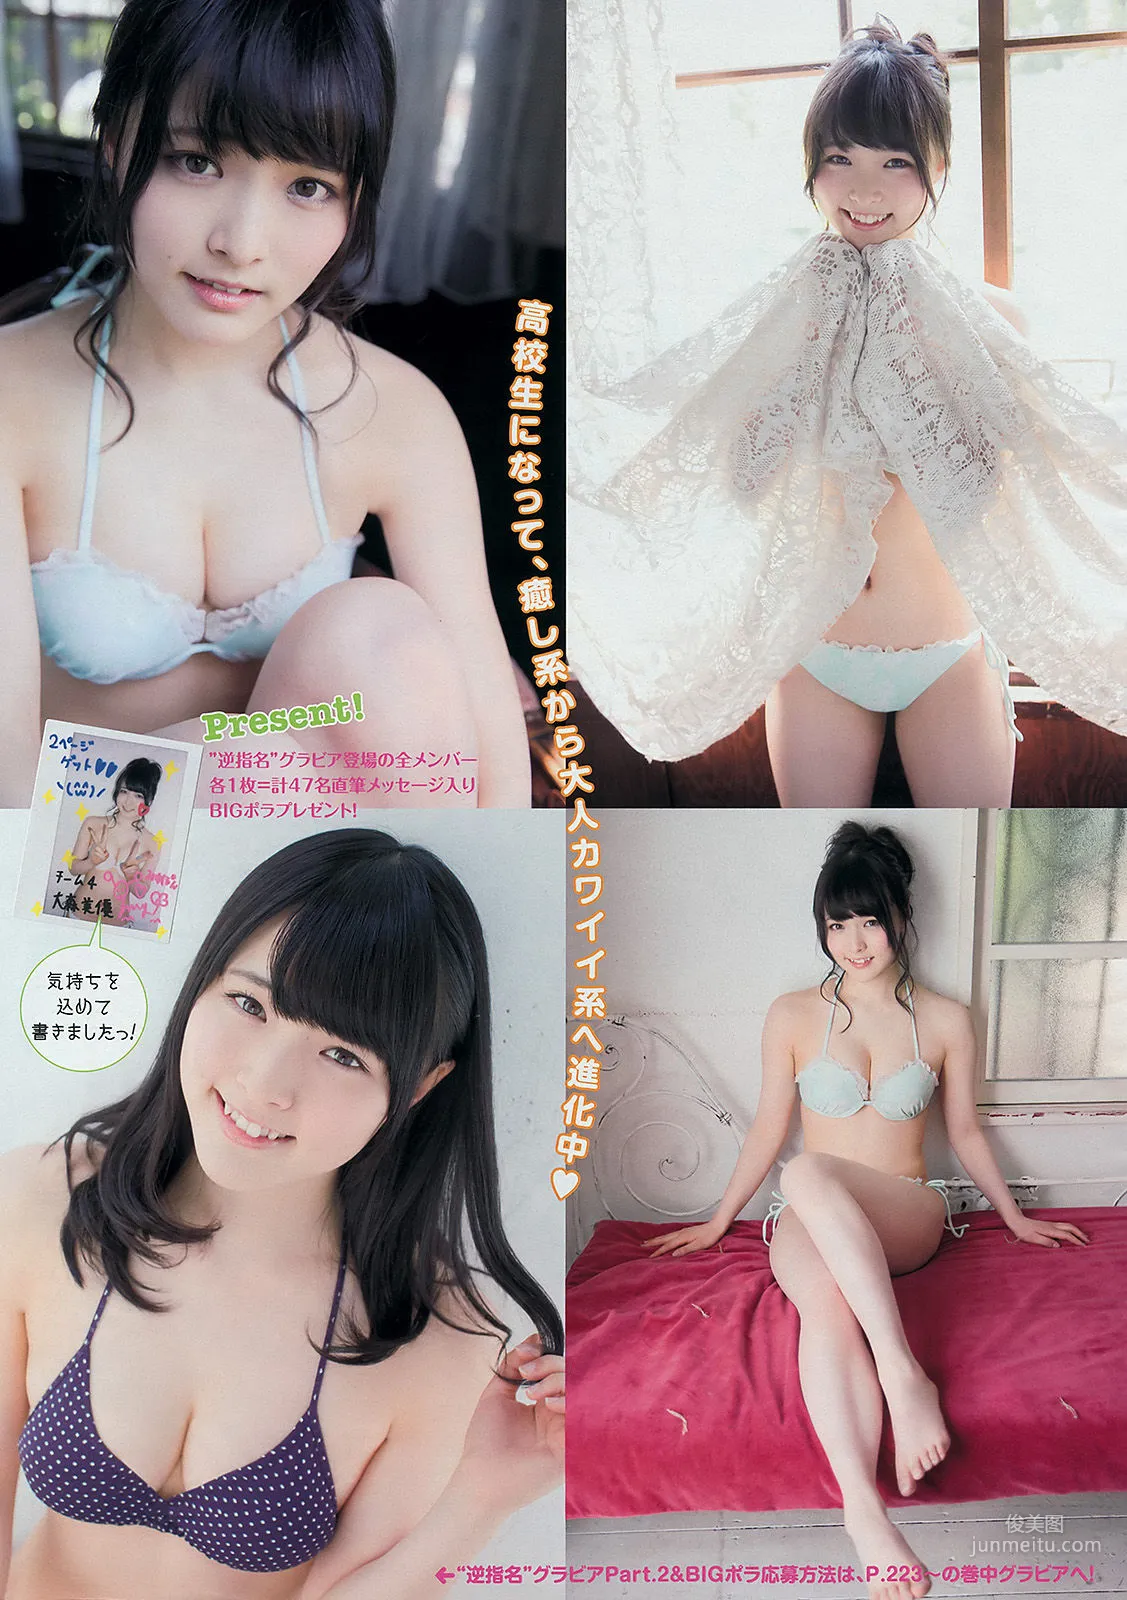 [Young Magazine] 渡辺麻友 川栄李奈 2401年No.27 写真杂志8